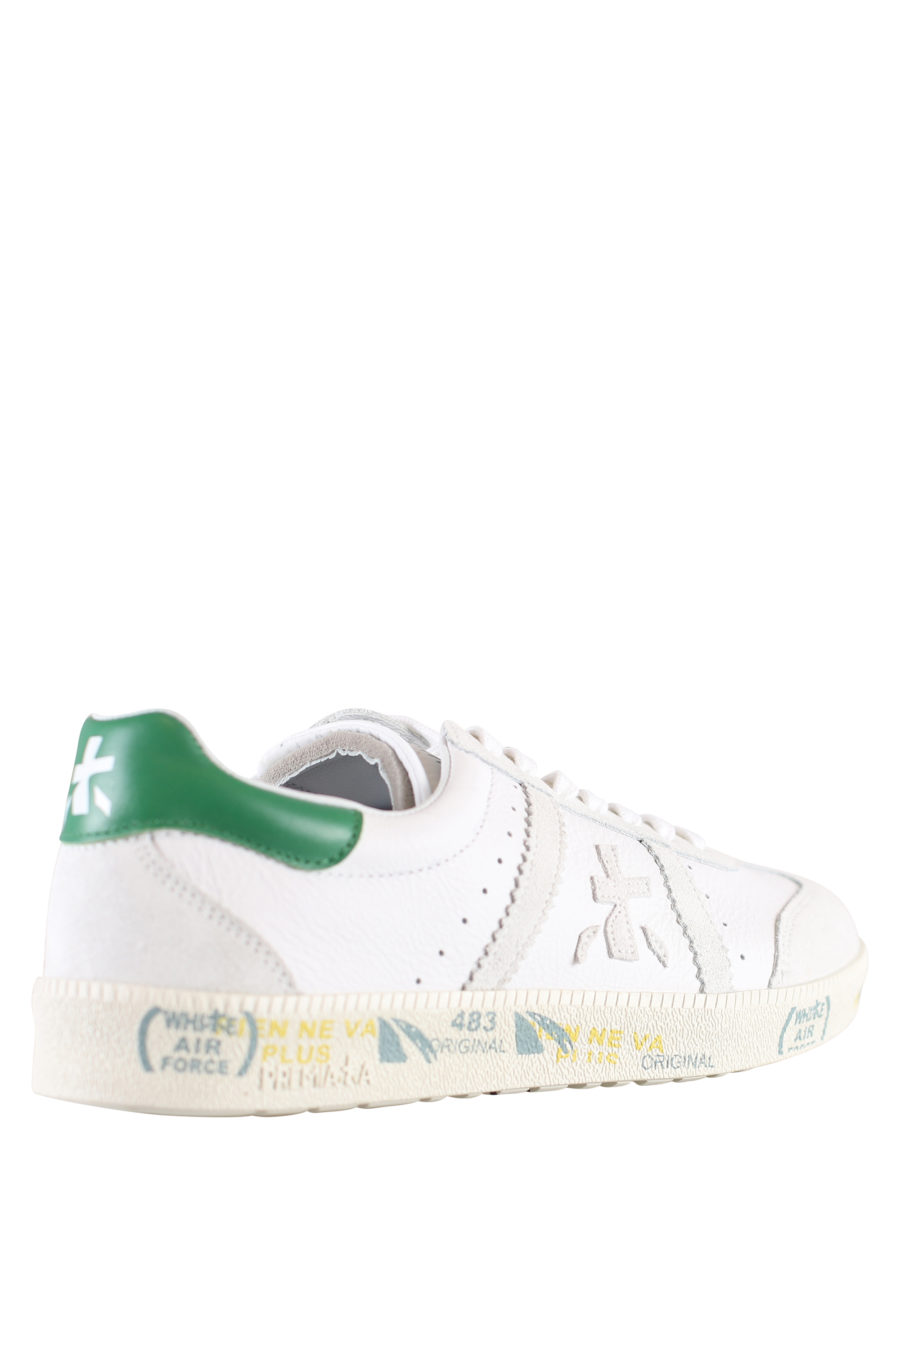 Zapatillas blancas con detalle verde "Bonnie" - IMG 1828